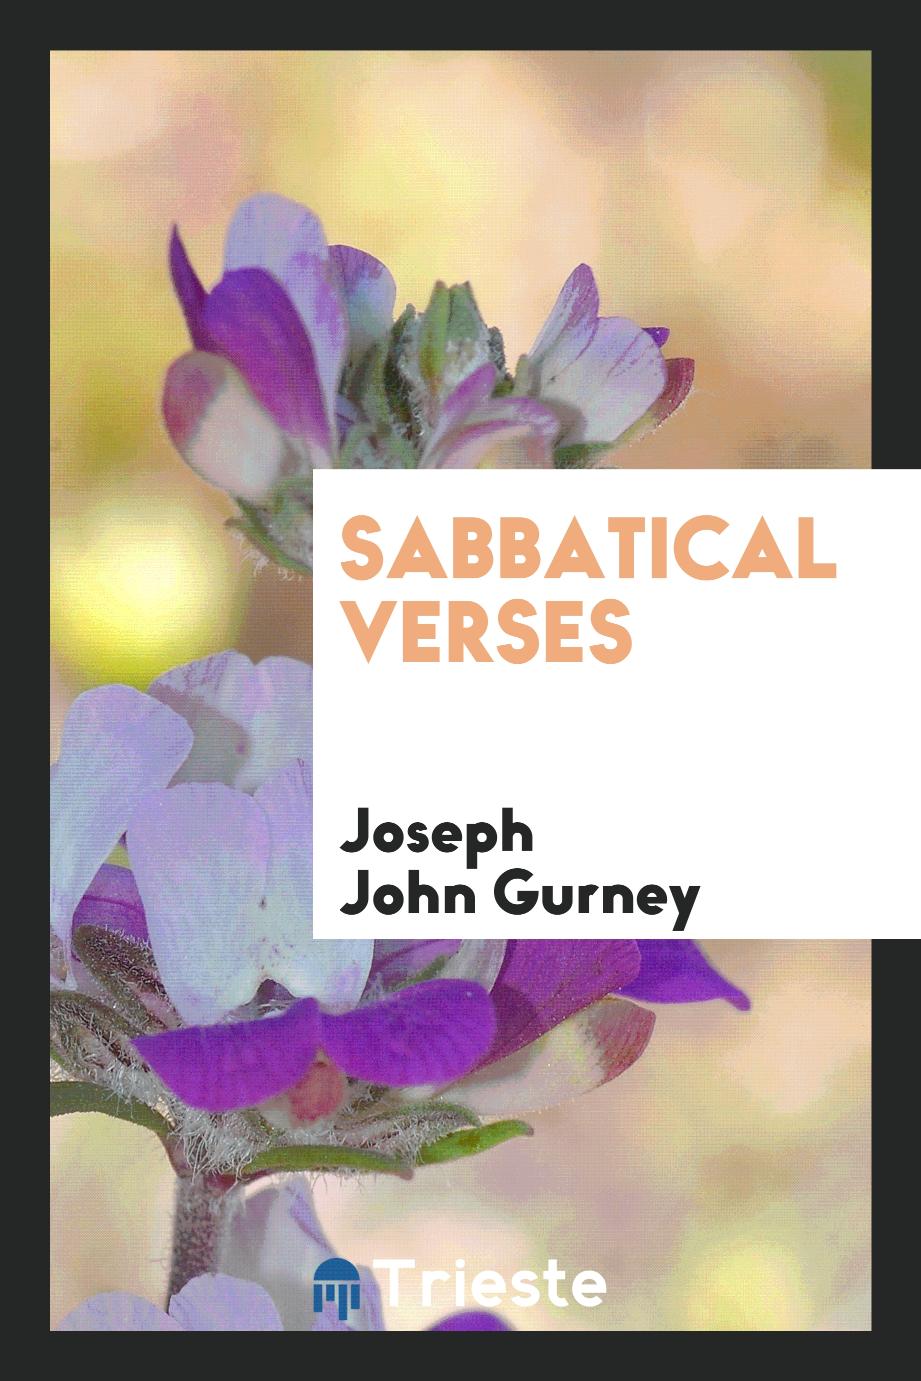 Sabbatical verses